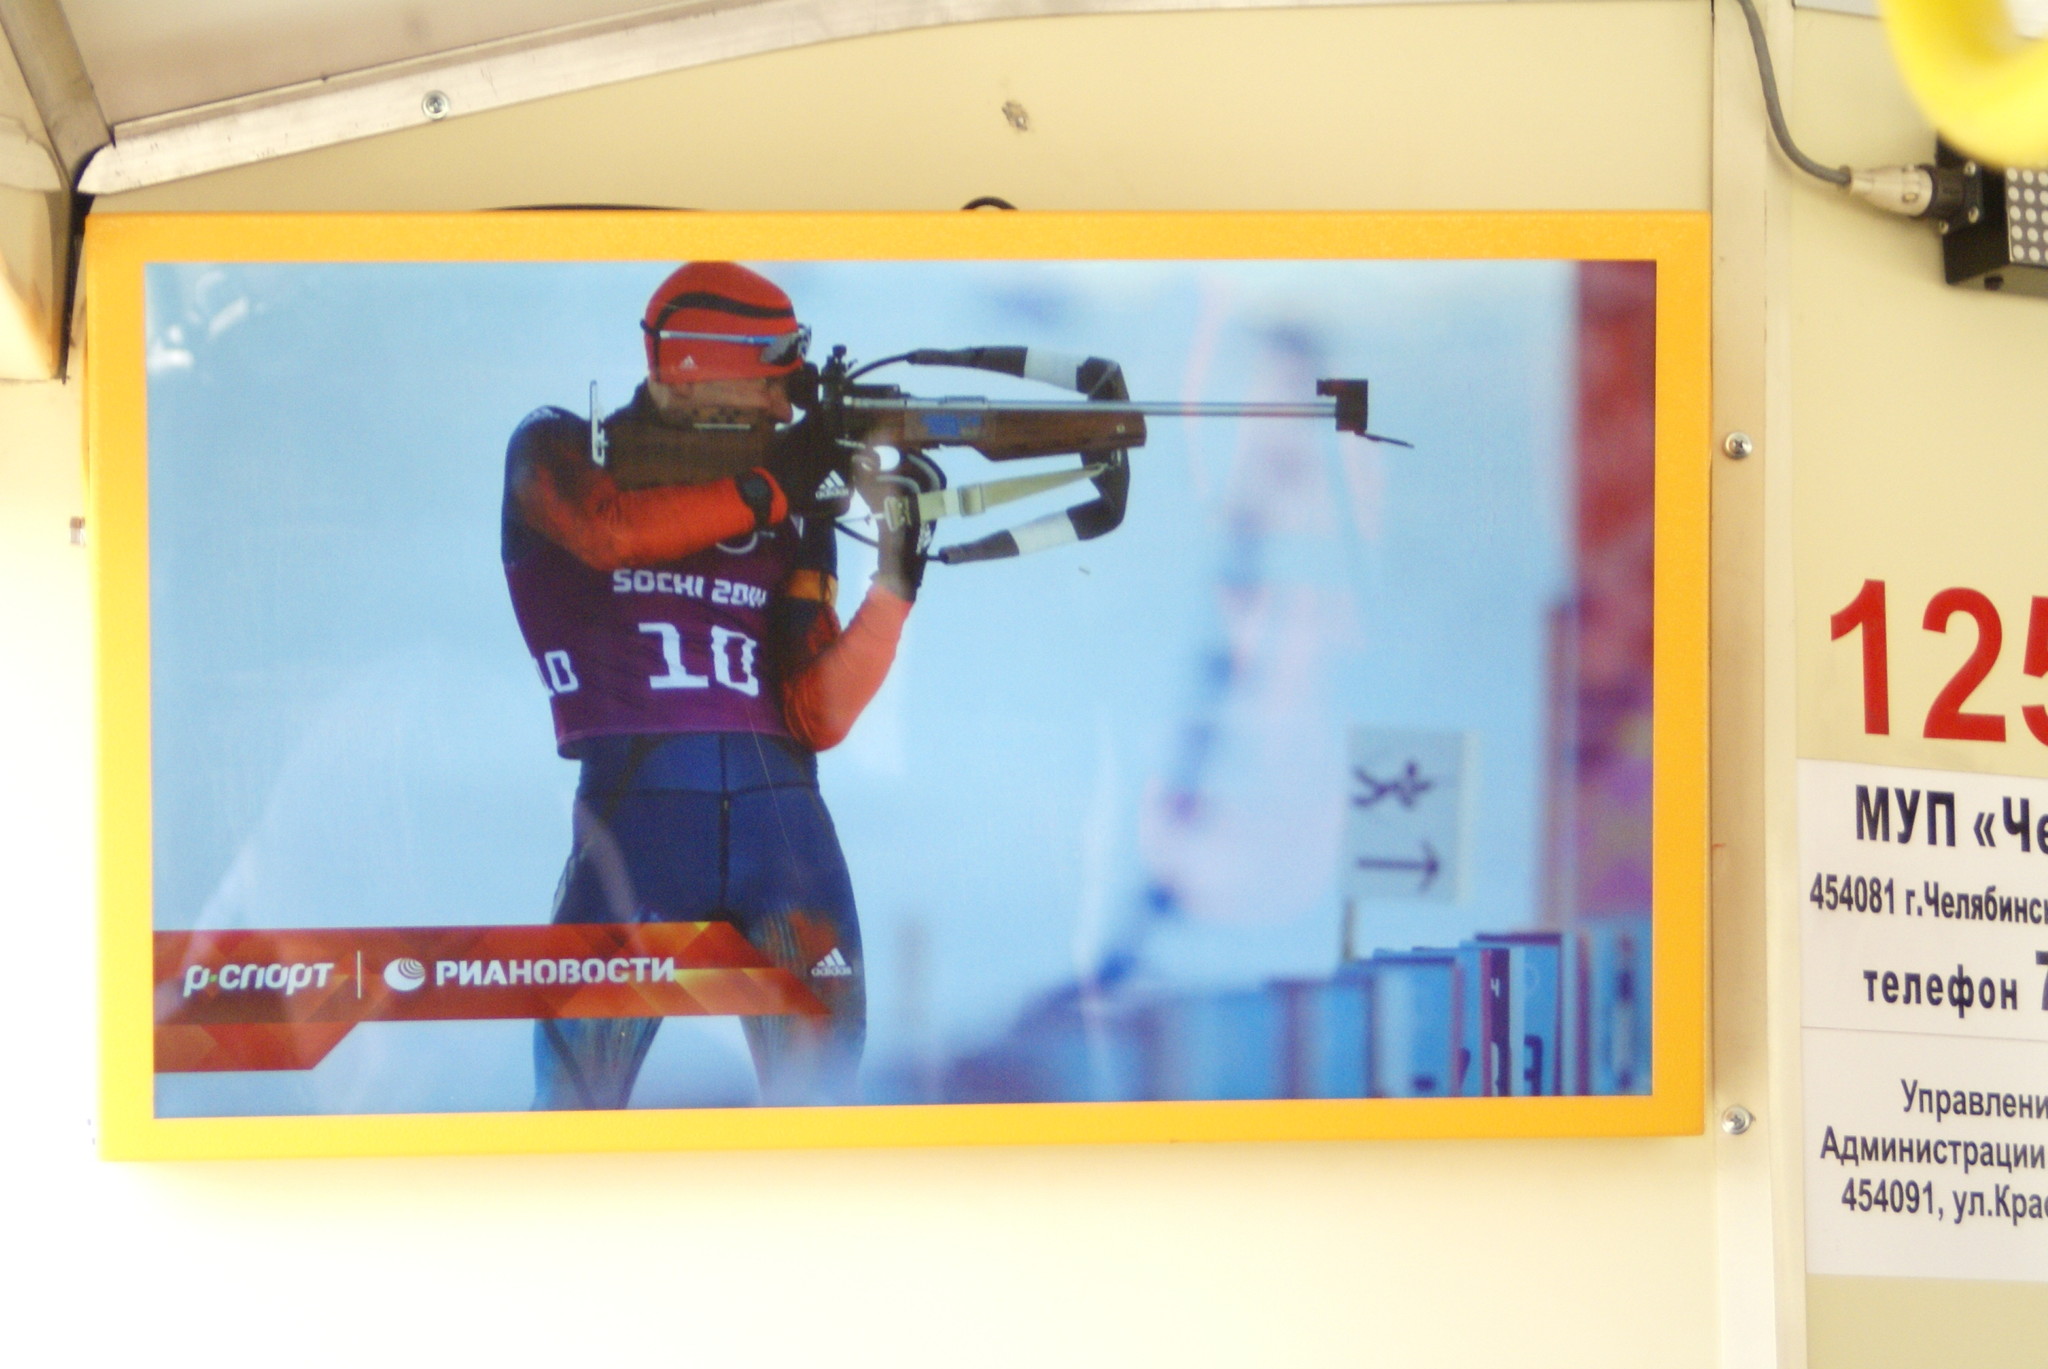 Яркие моменты Олимпиады в Сочи от РИА НОВОСТИ на Маршрутном Телевидении